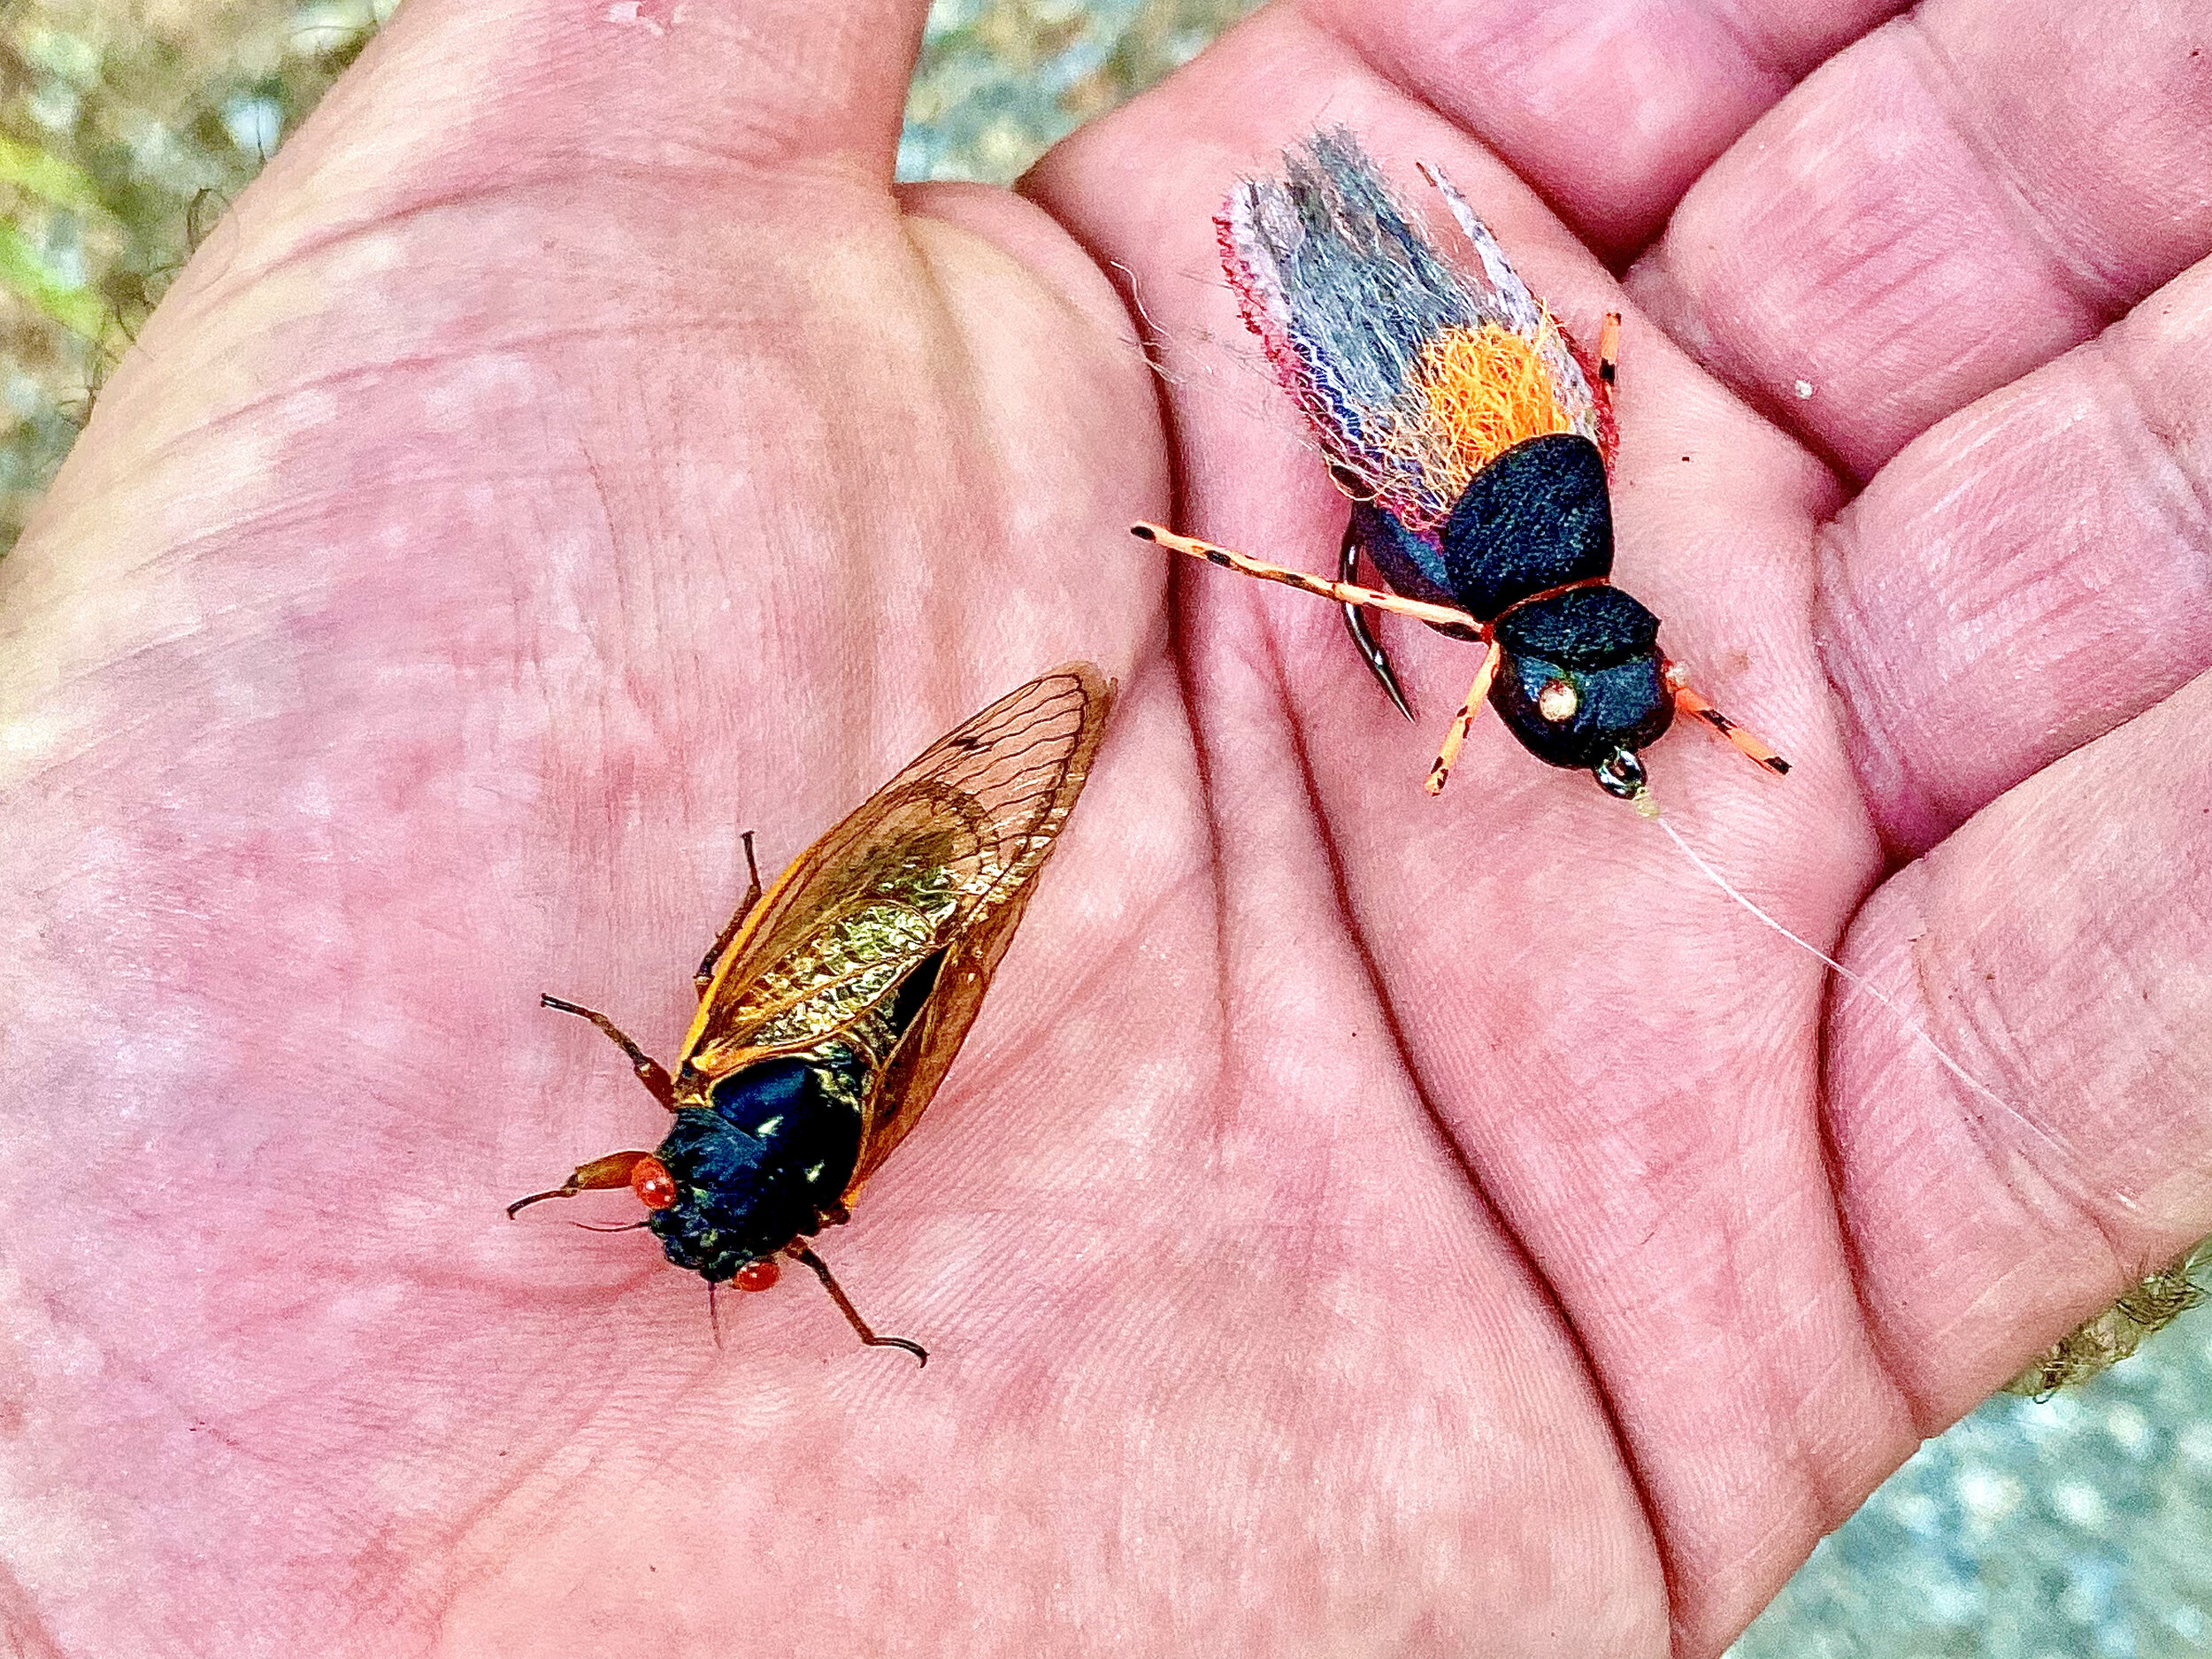 Fishing The Big Bug - The Brood X Cicada — Panfish On The Fly